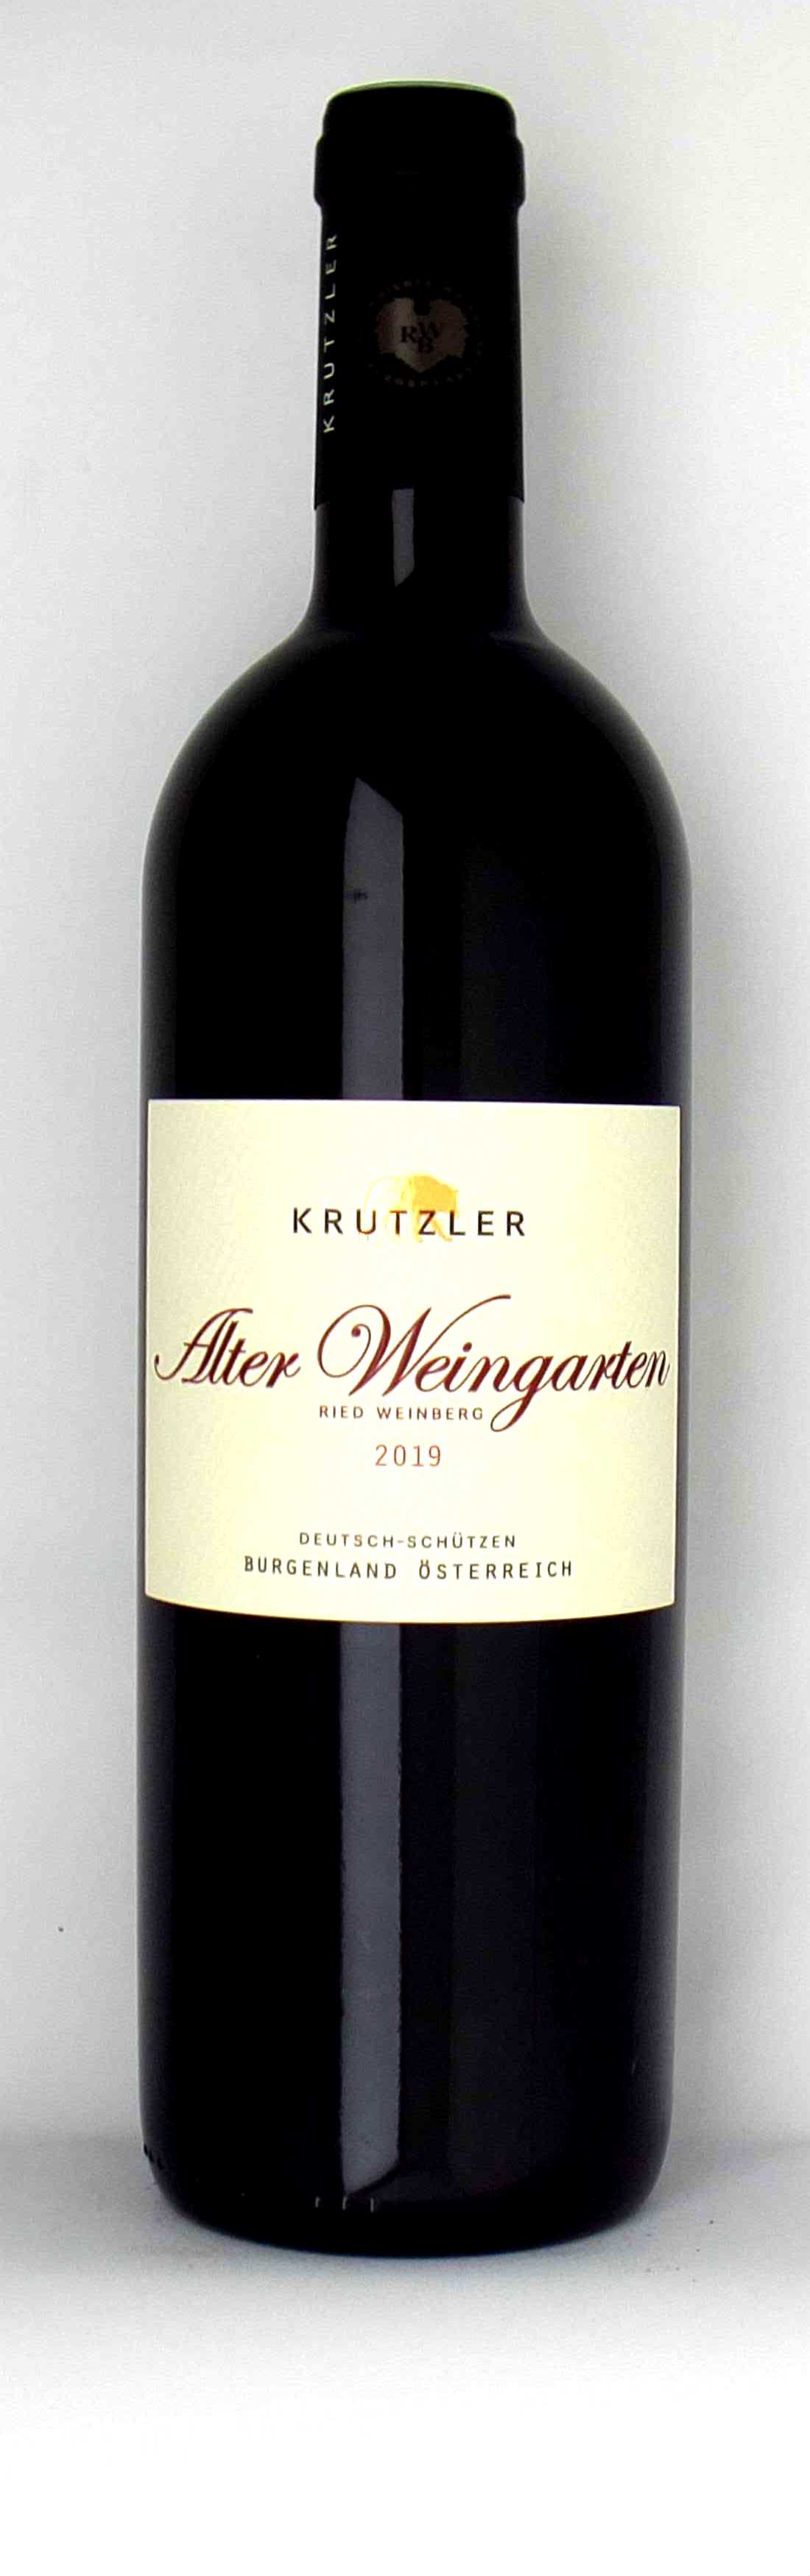 Vinothek Eisenberg Alter Weingarten 2019 Krutzler